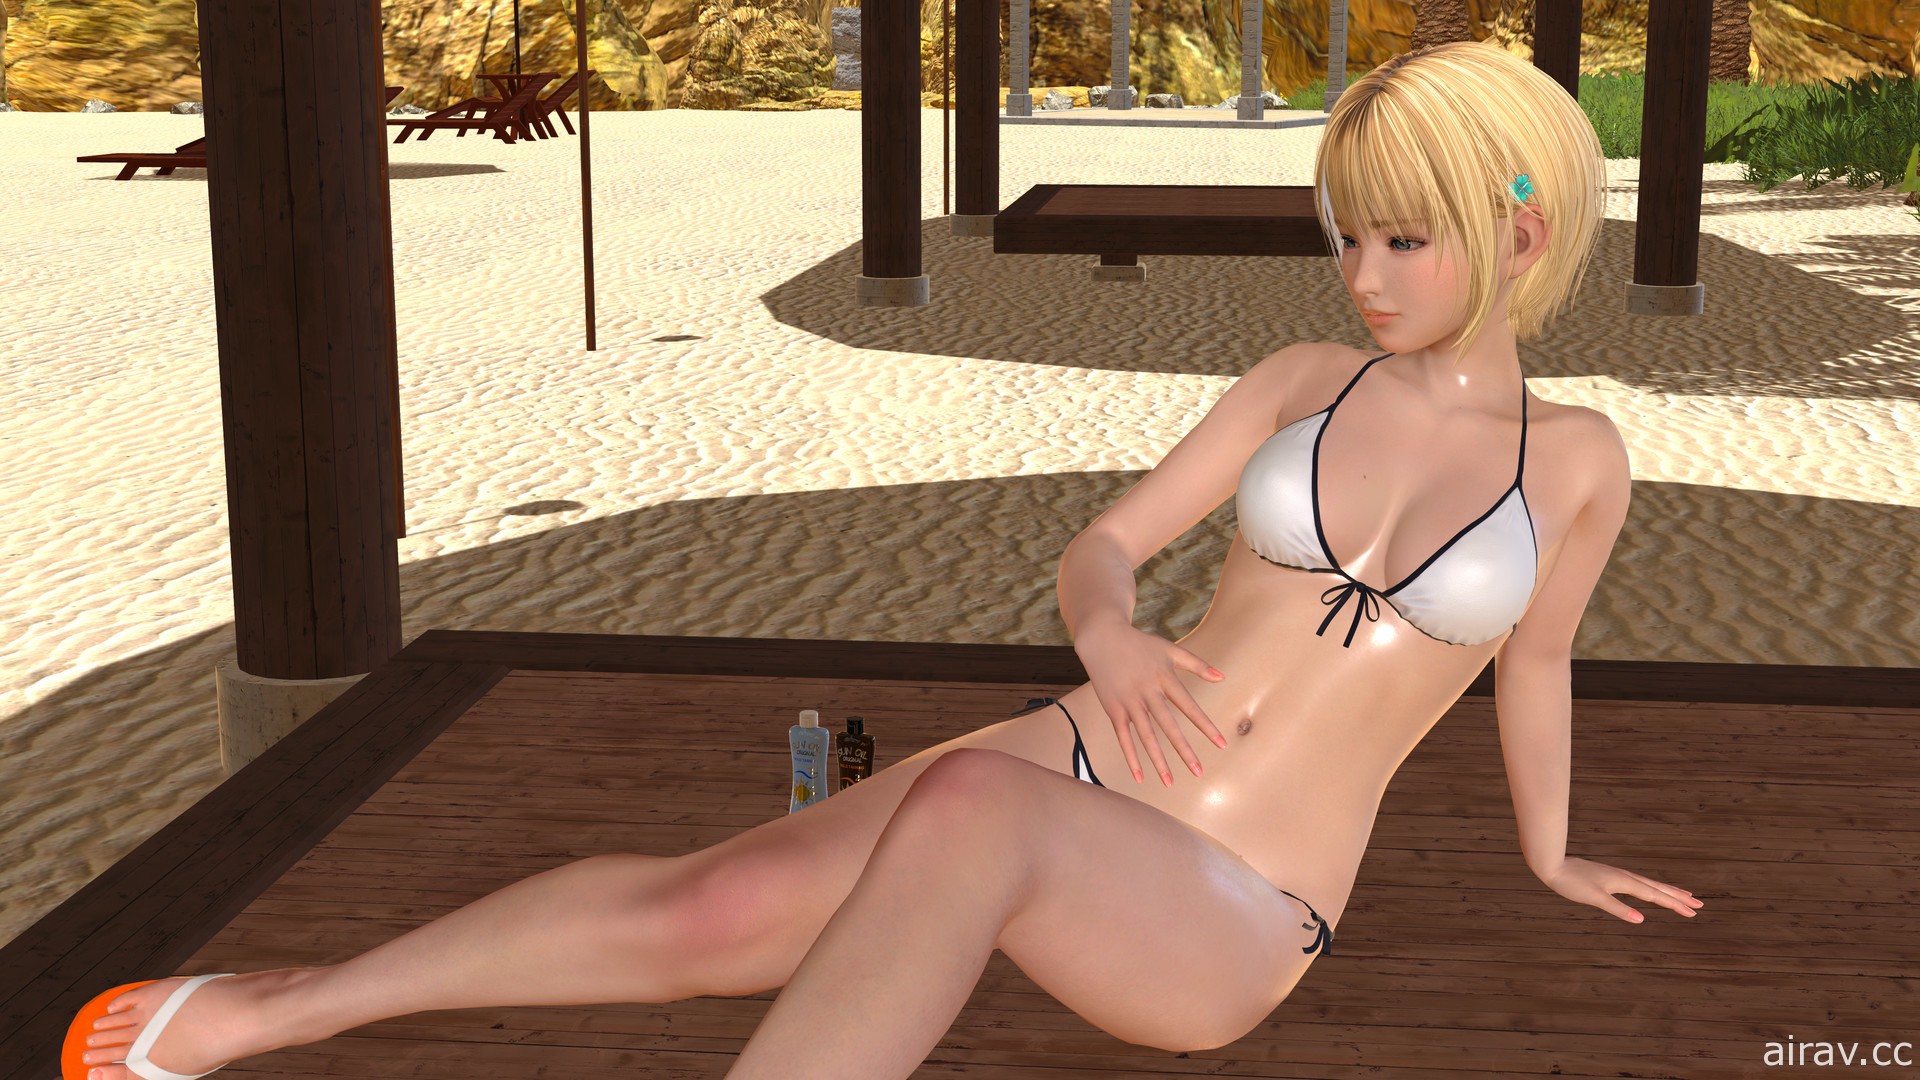 VR 新作《夏日假期》24 日在 Steam 上市 在海灘與泳裝女孩度過快樂時光